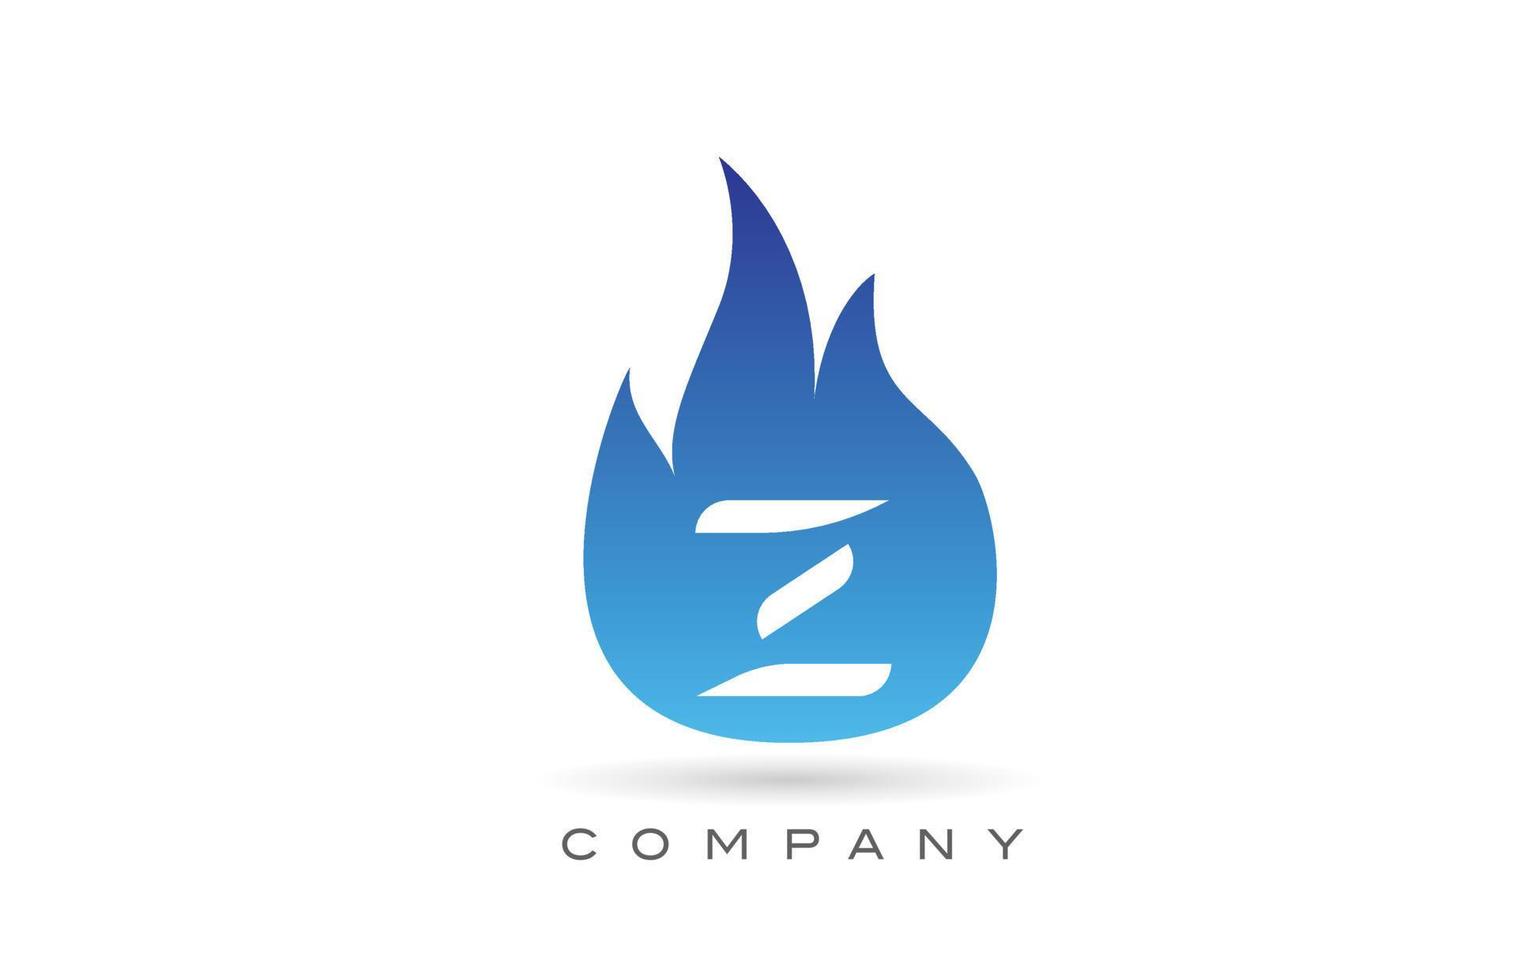 z fogo azul chamas design do logotipo da letra do alfabeto. modelo de ícone criativo para empresa e negócios vetor